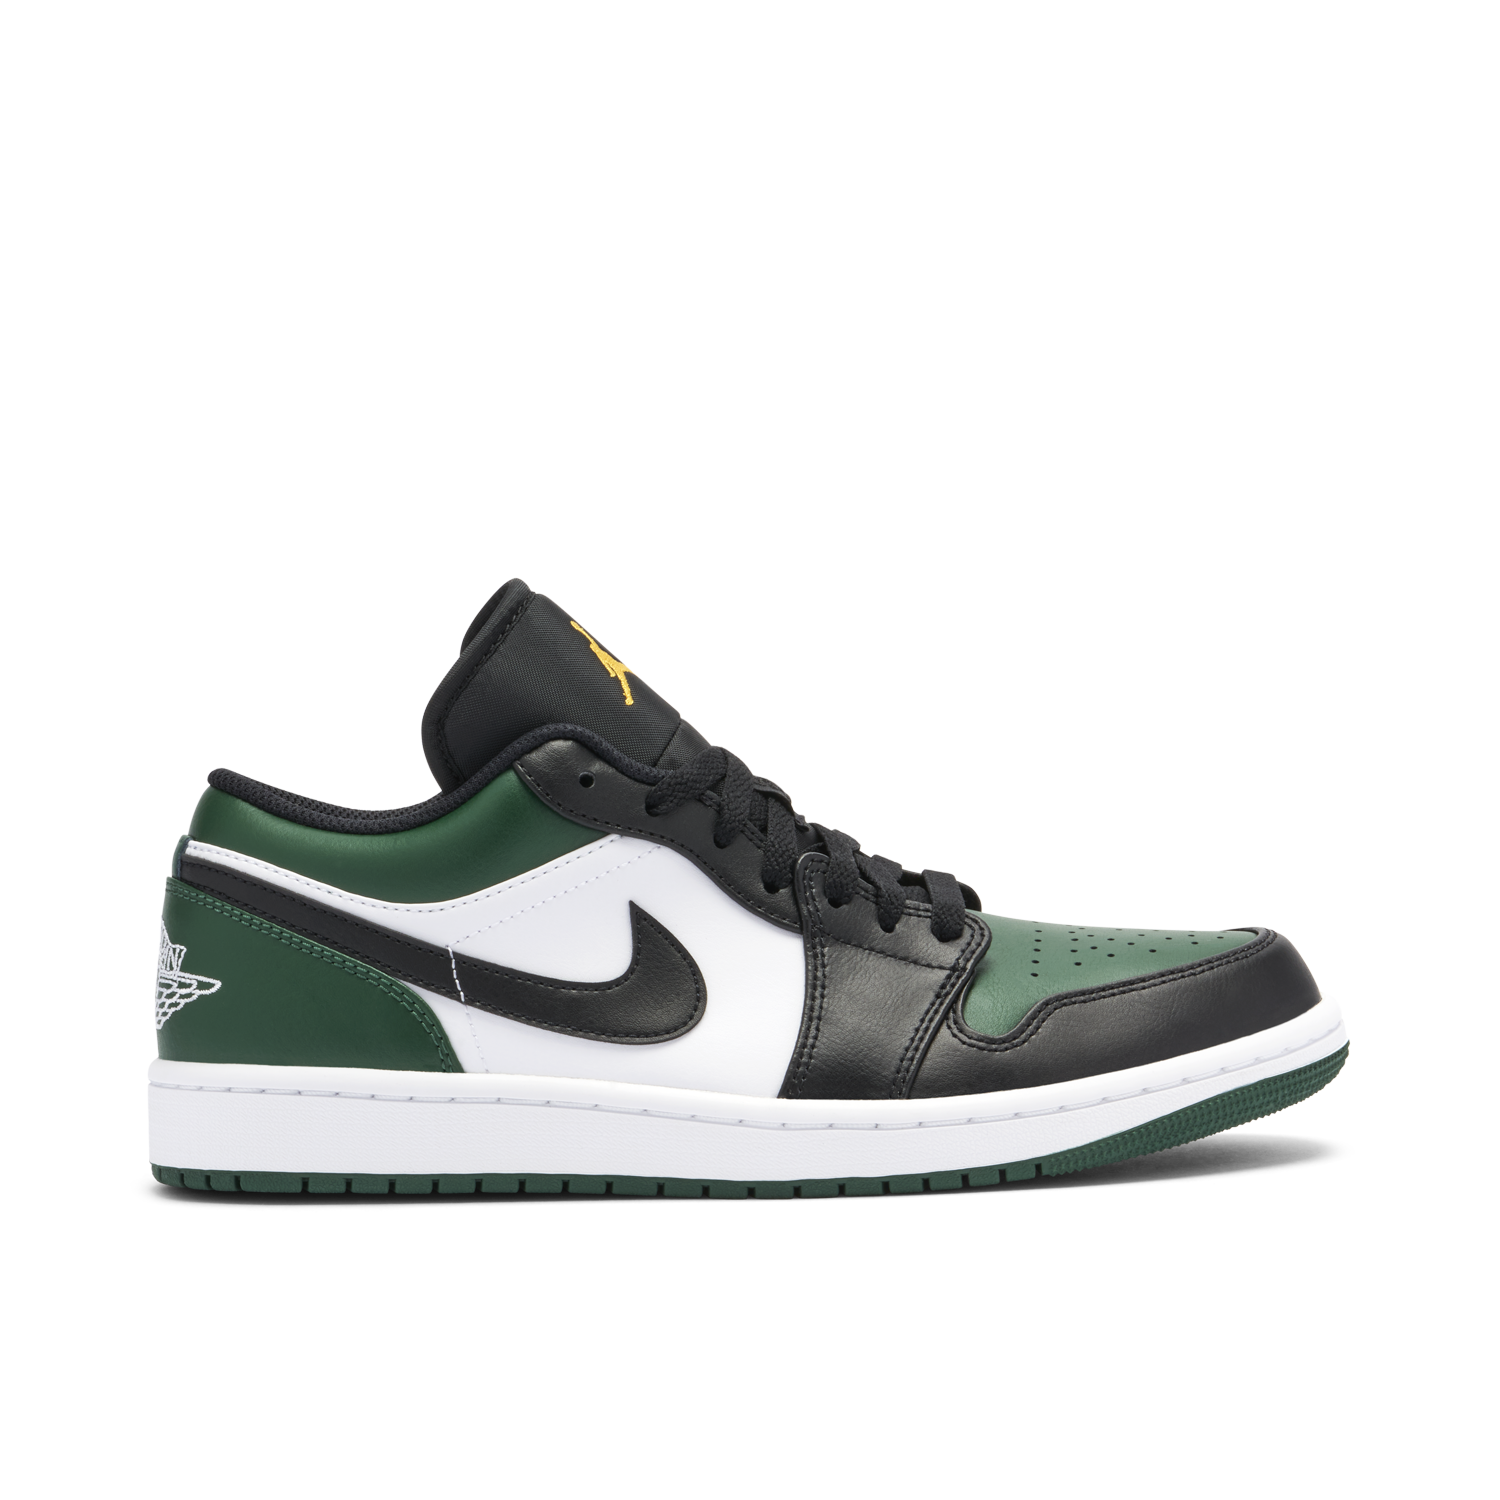 Air Jordan 1 Low Green Toe | 553558-371 | Laced